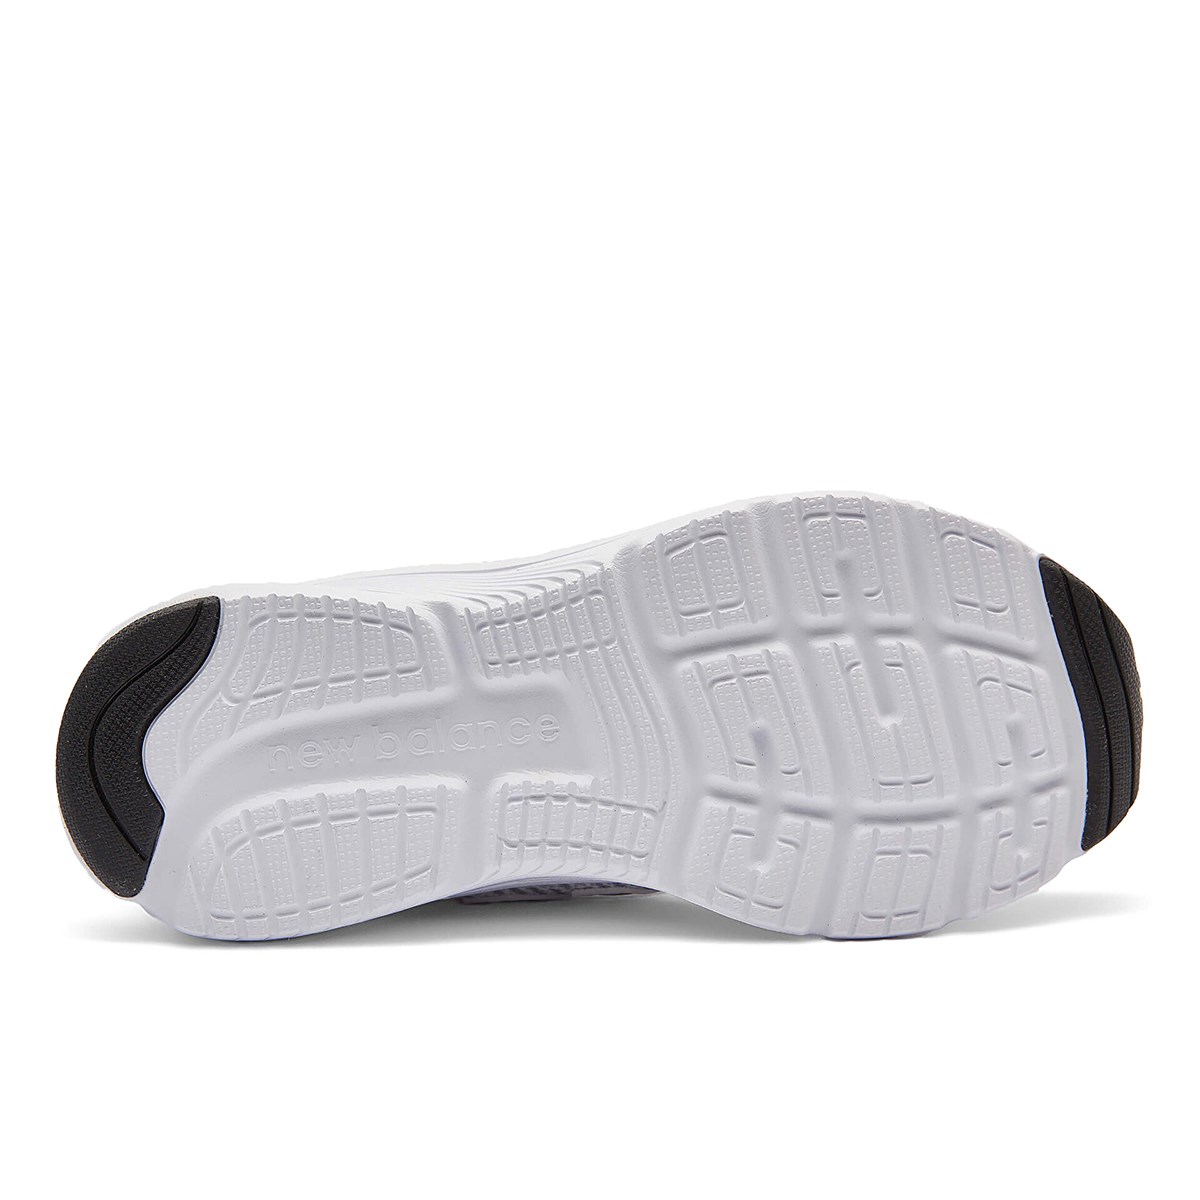 New Balance 411 Erkek Koşu Ayakkabısı Beyaz